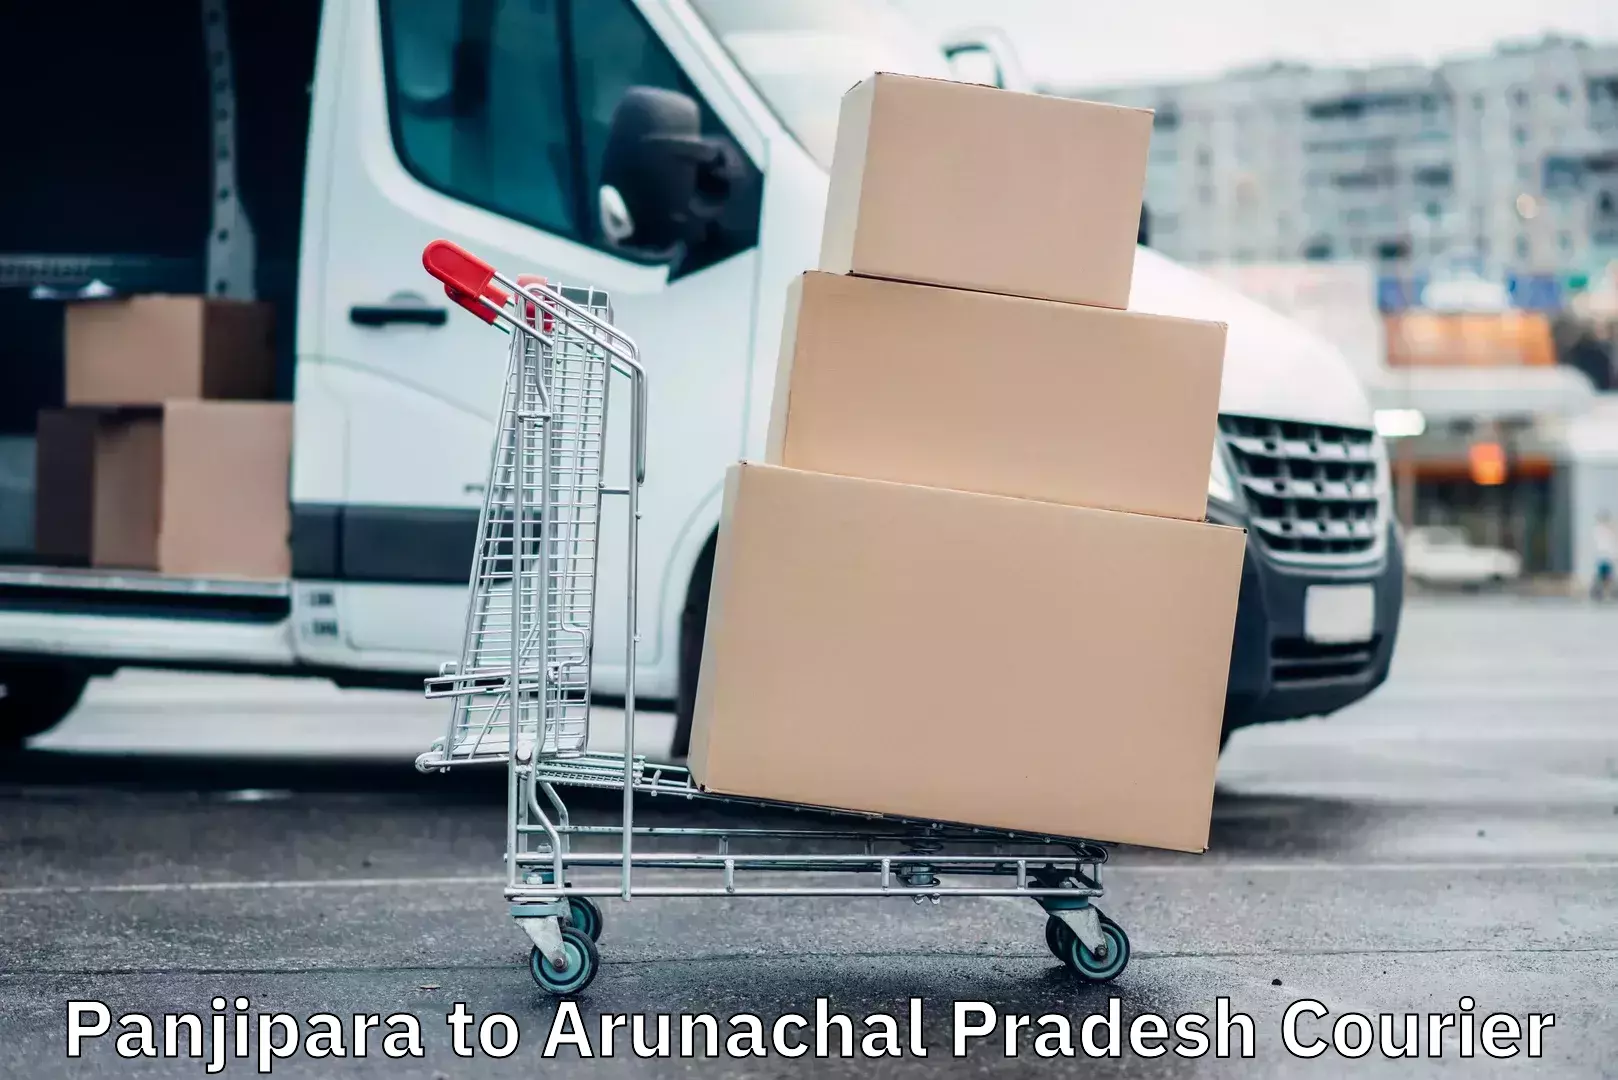 Secure packaging Panjipara to Arunachal Pradesh